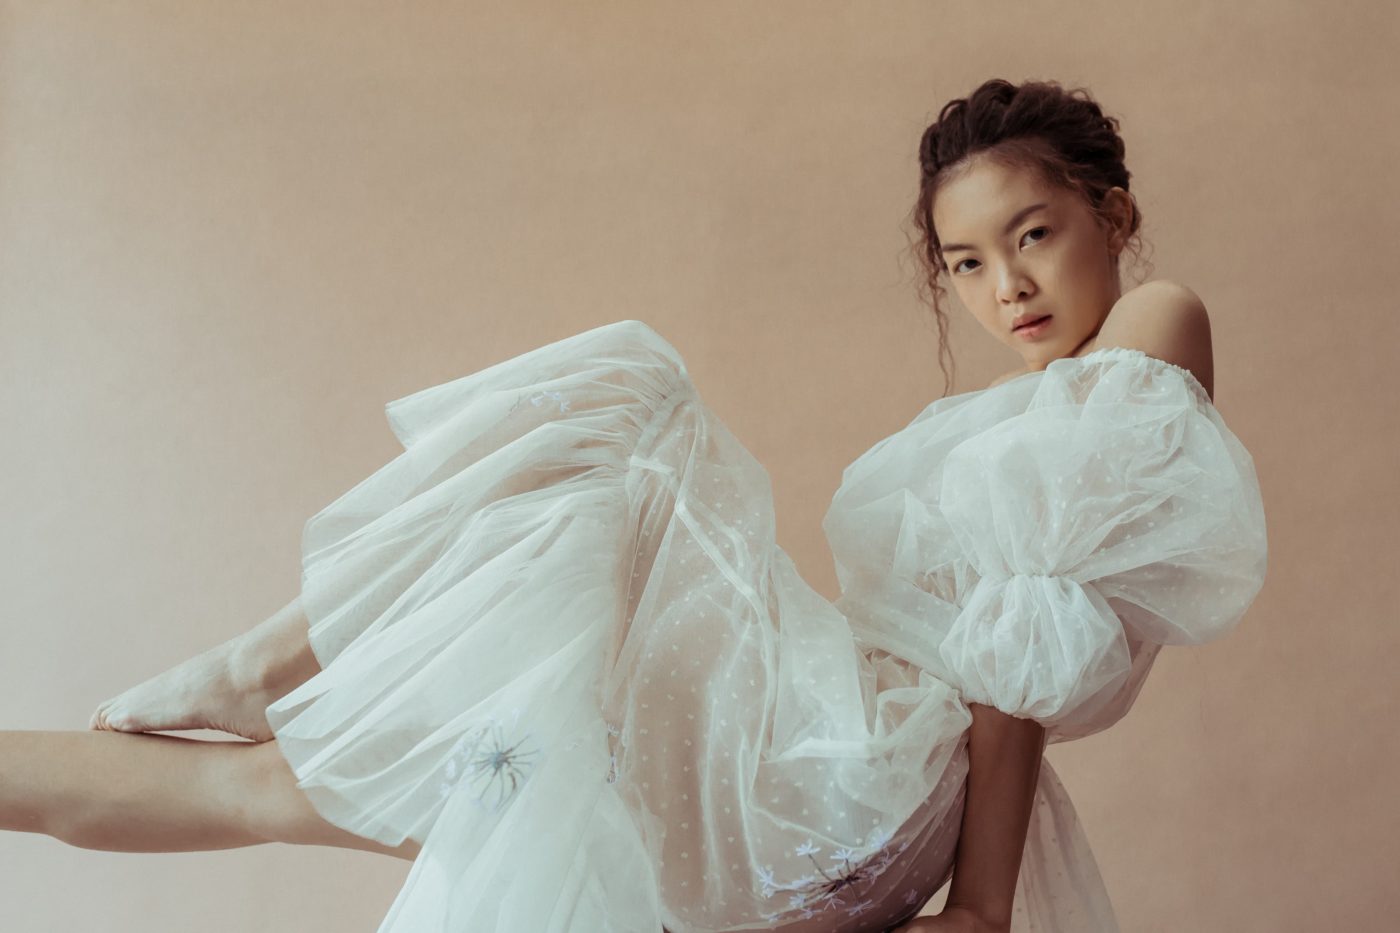 nadia leona basic models female fashion singapore